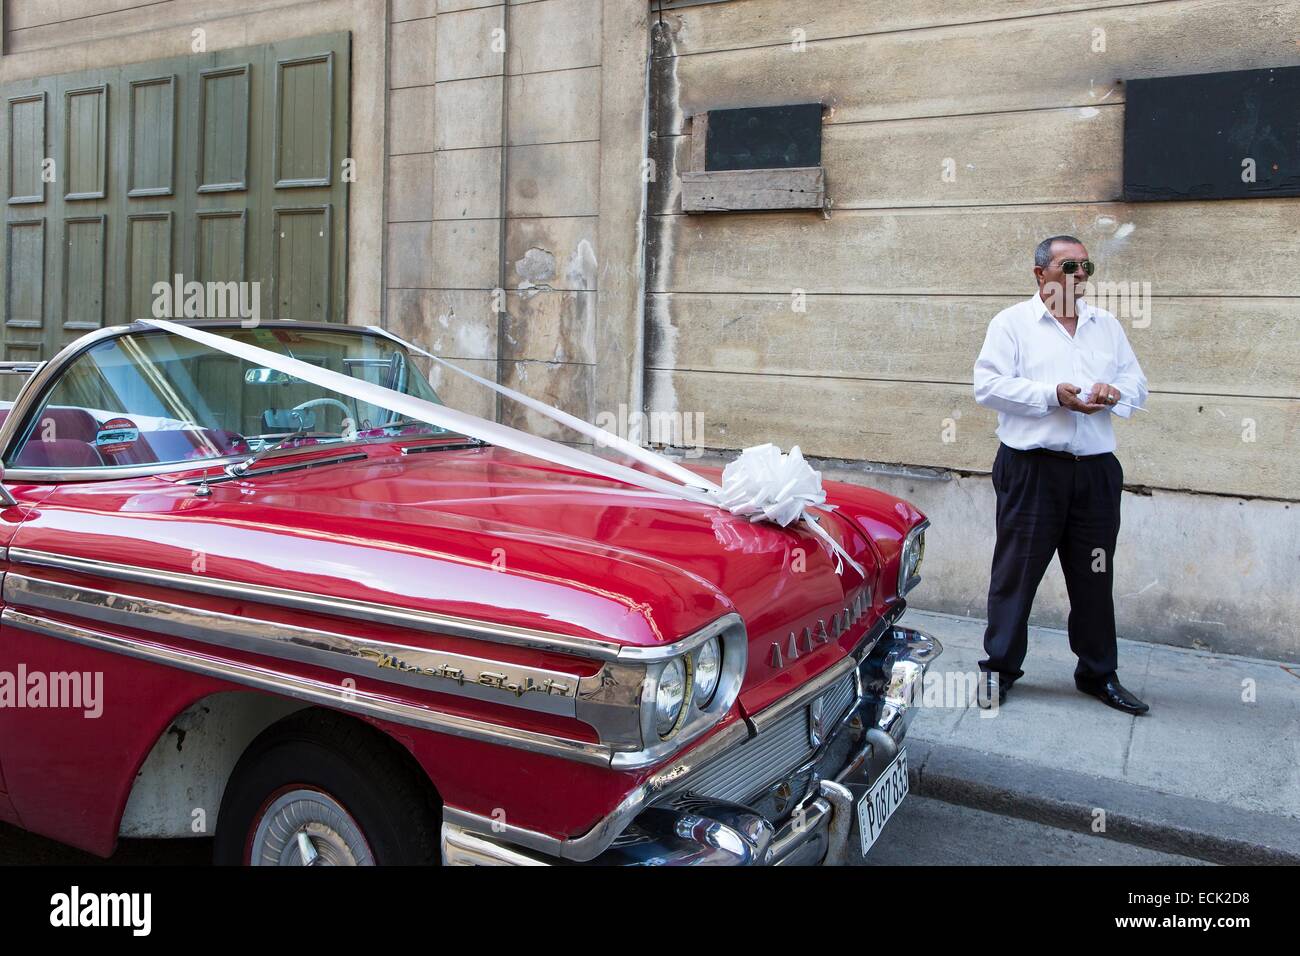 Kuba, La Habana, Centro Habana Districy, amerikanisches Auto geparkt Bearby Palacio de Los Matrimonios auf dem Paseo del Prado Stockfoto